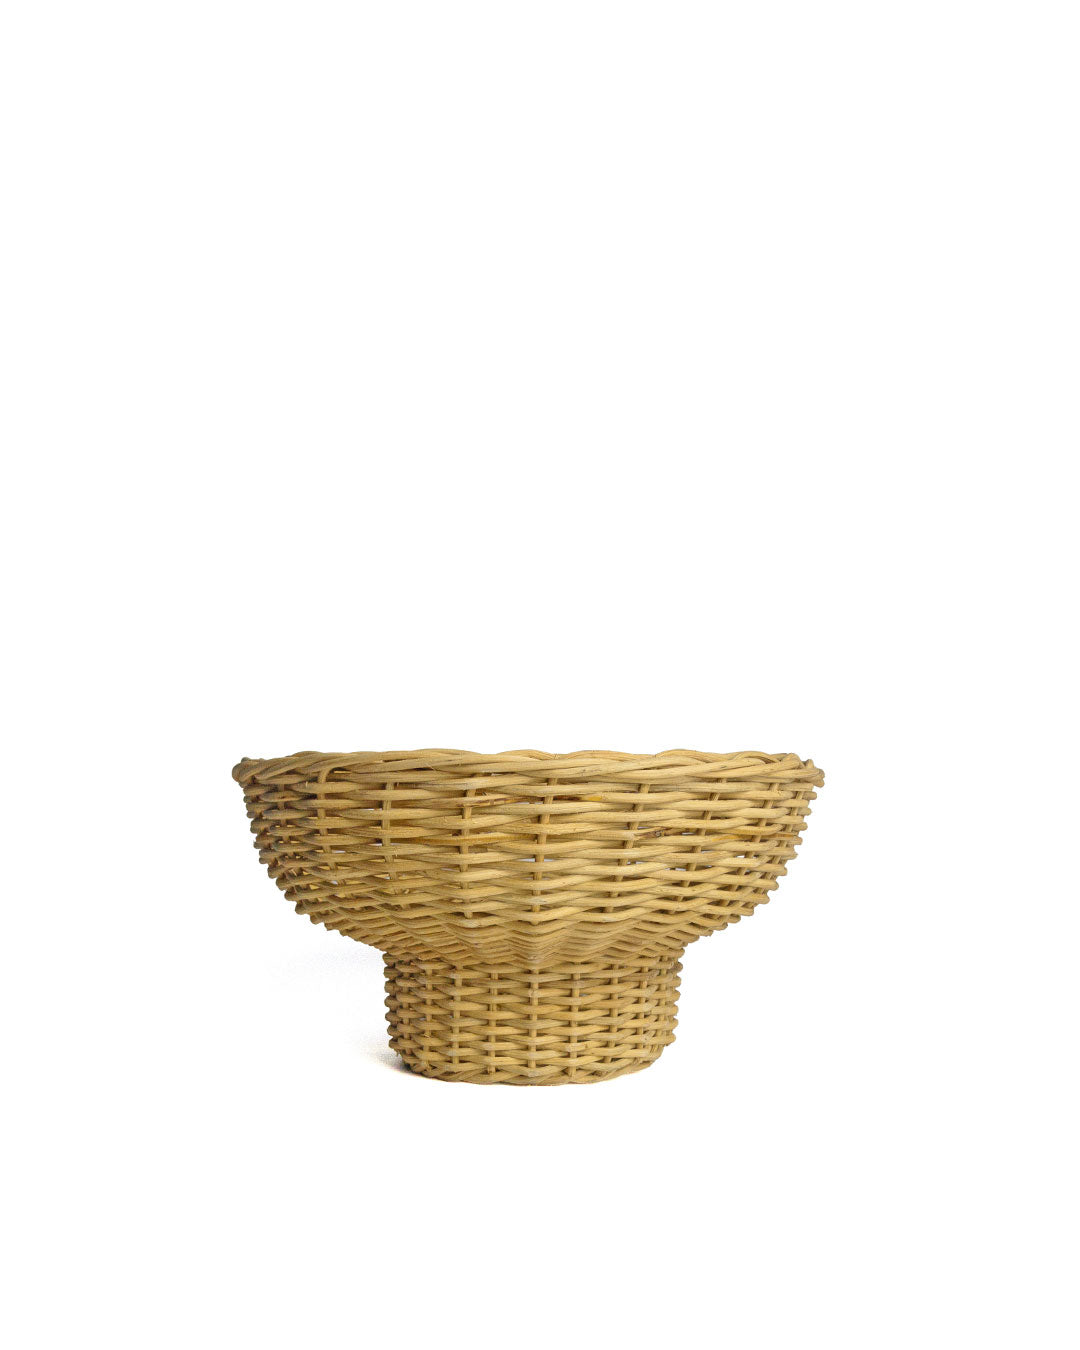 Bowl Vase Hand-woven Fili